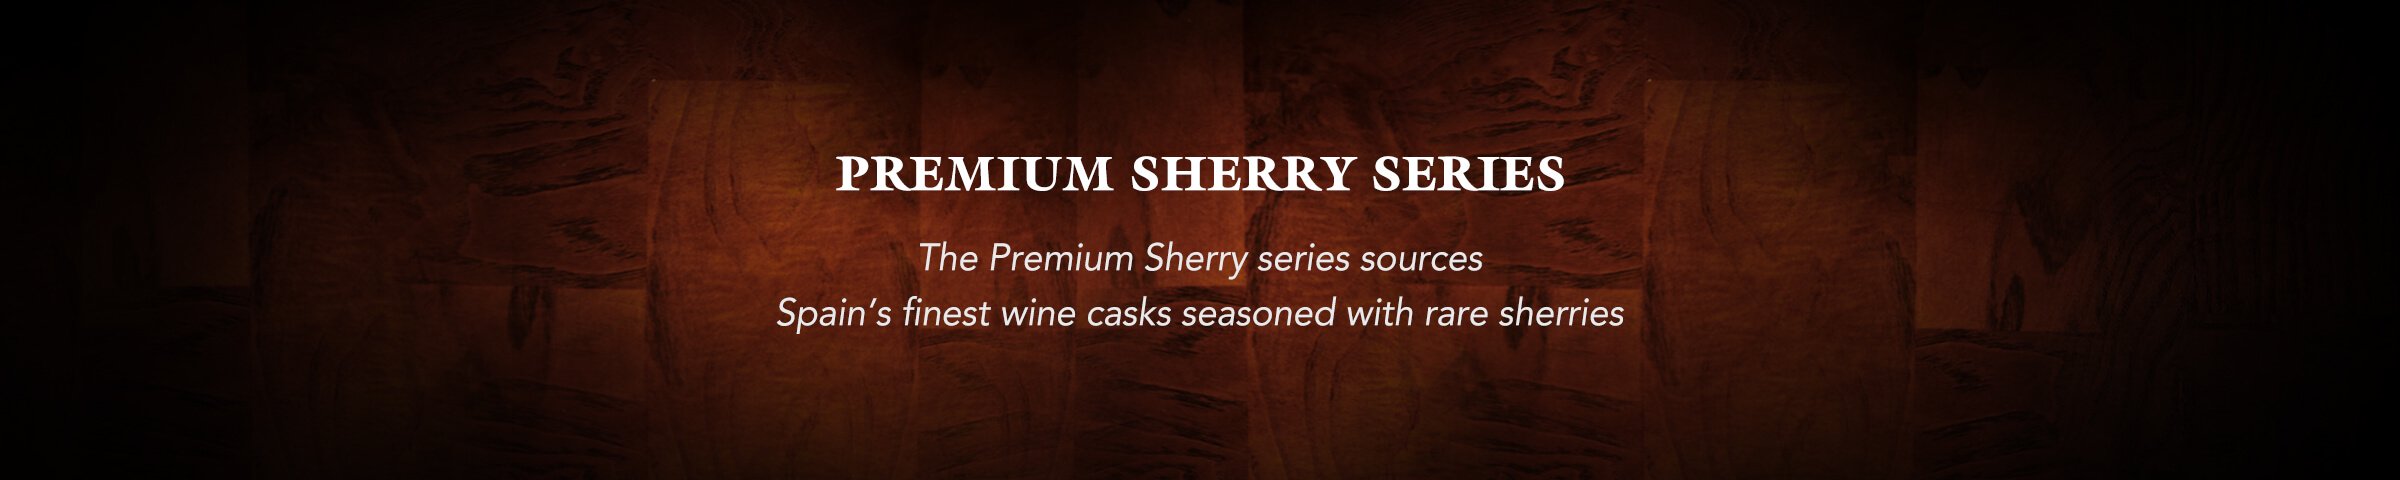 Premium Sherry Series